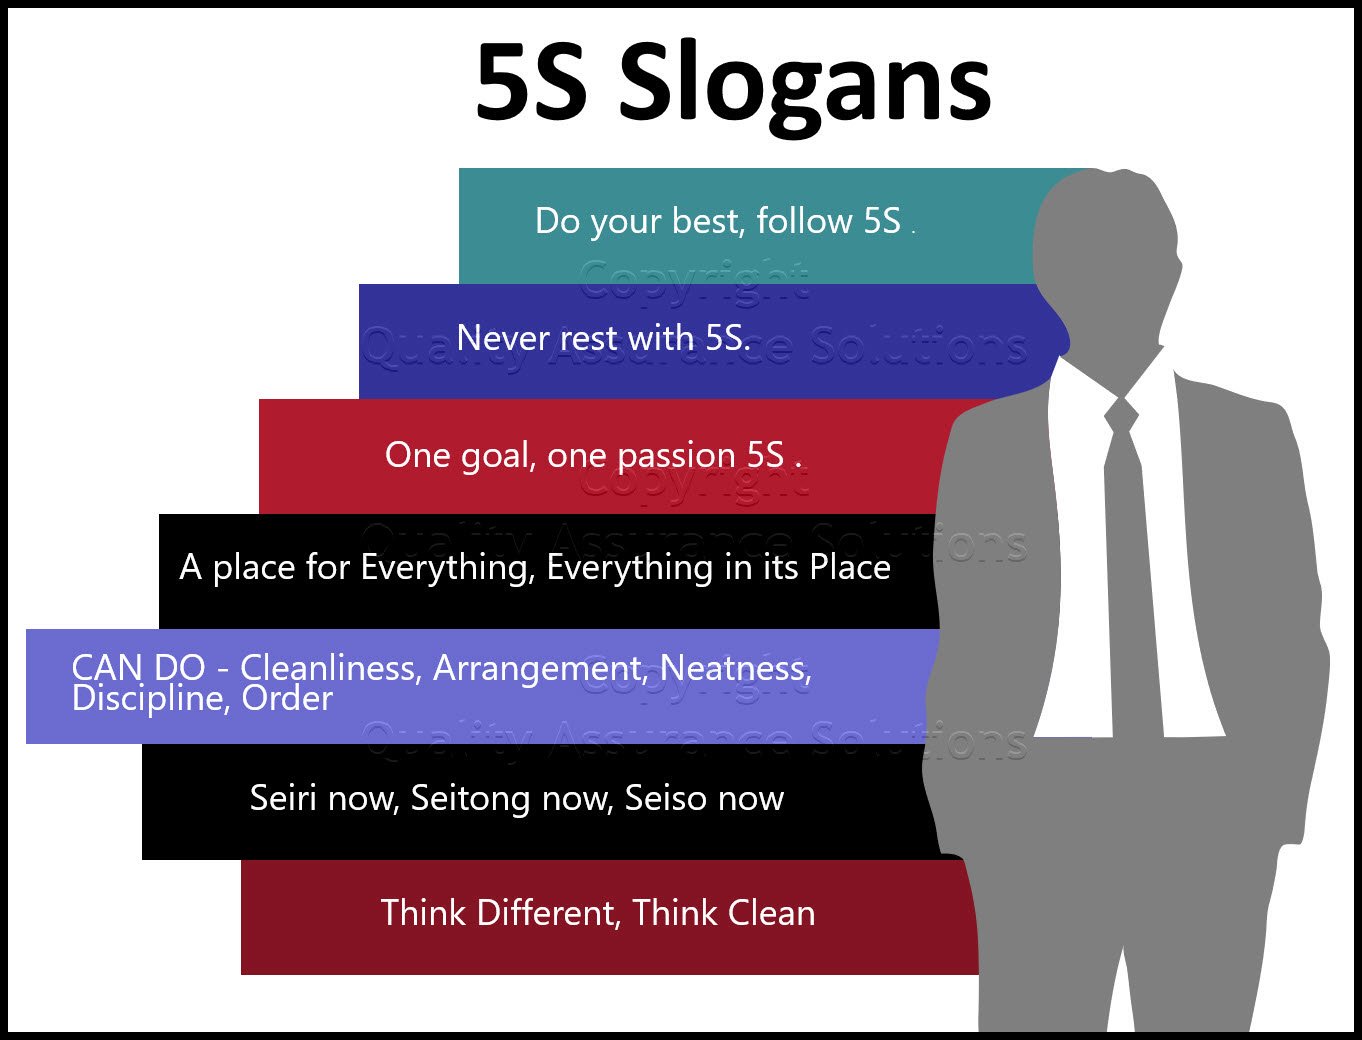 شعارهای 5S برای برنامه Lean 5S شما